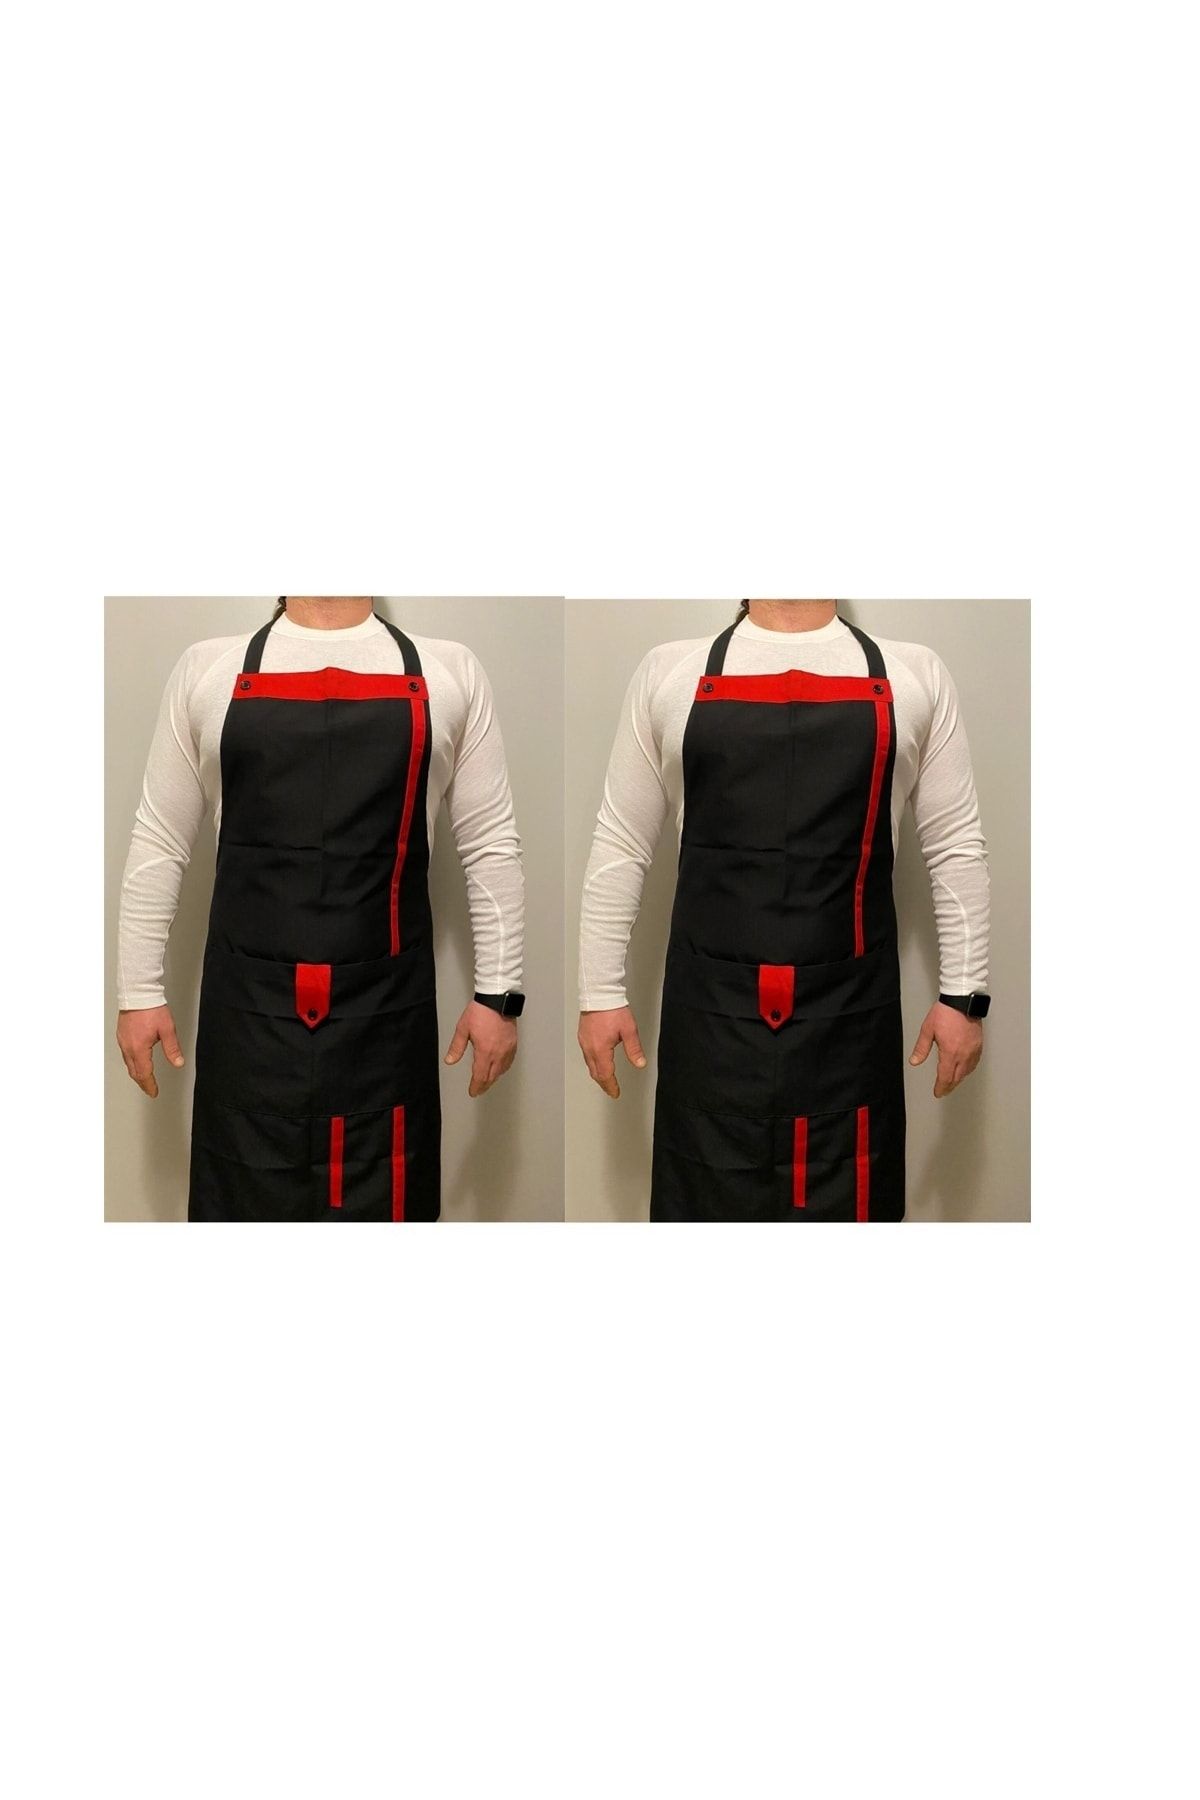 Umut Tekstil 2 Adet Mutfak Önlüğü Garson Aşçı Şef Servis Boydan Askılı Düğmeli Cepli Unisex